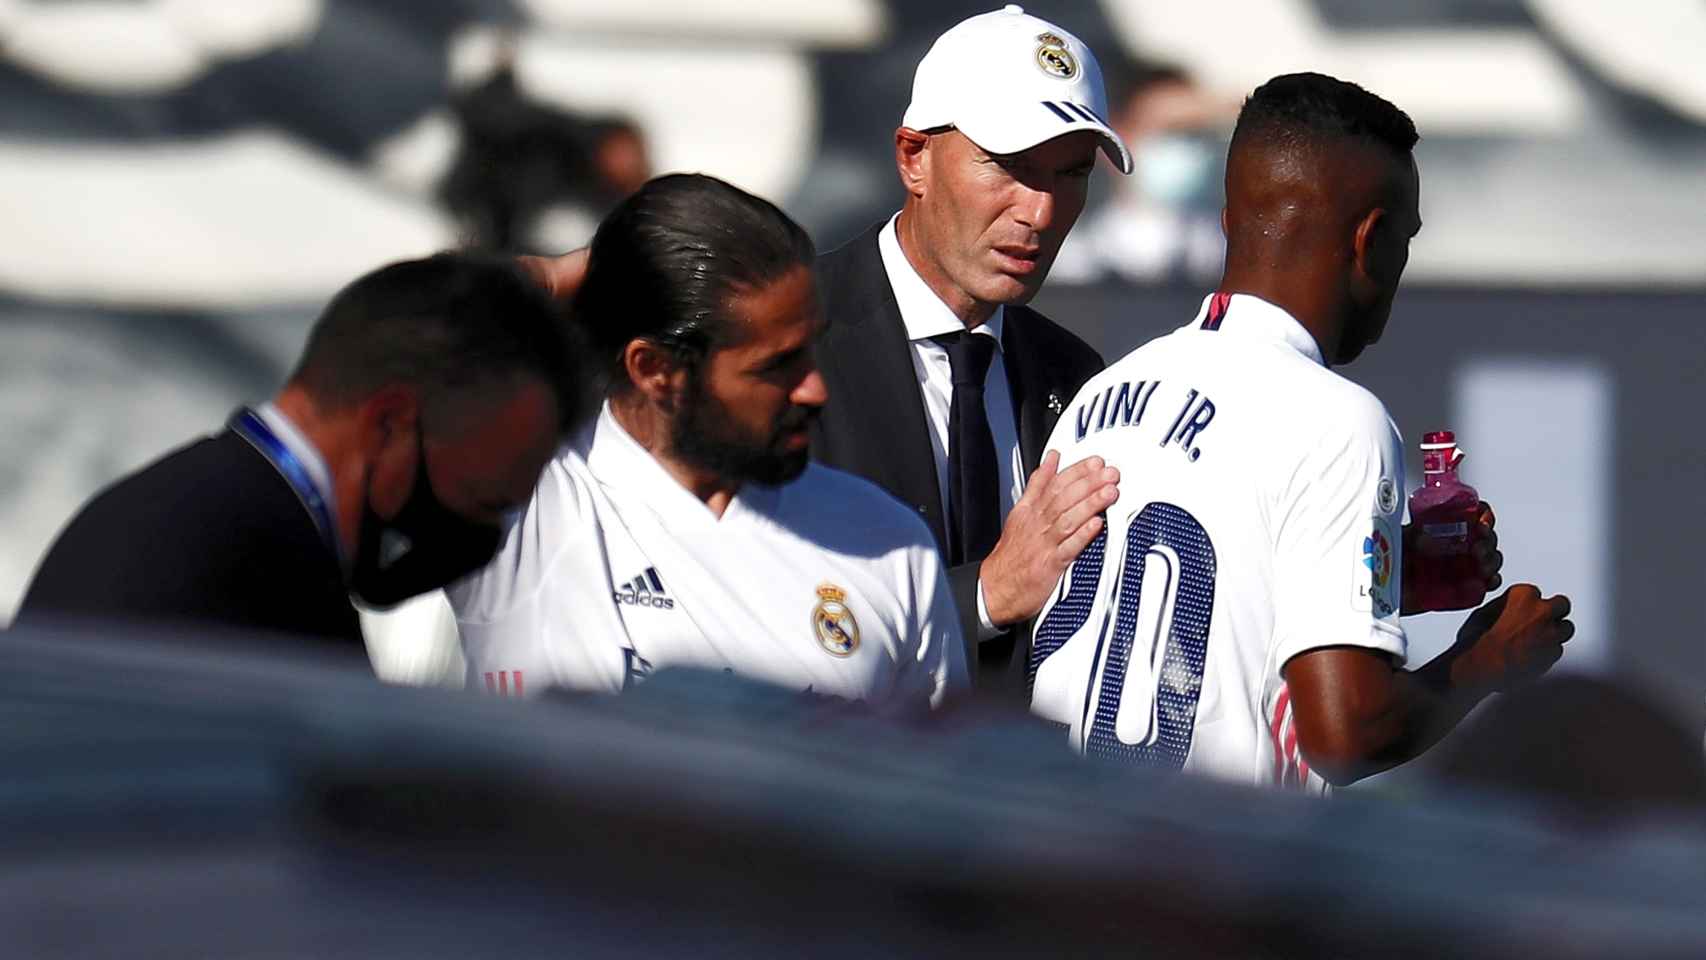 Zinedine Zidane da instrucciones a Vinicius e Isco Alarcón durante el Real Madrid - Huesca